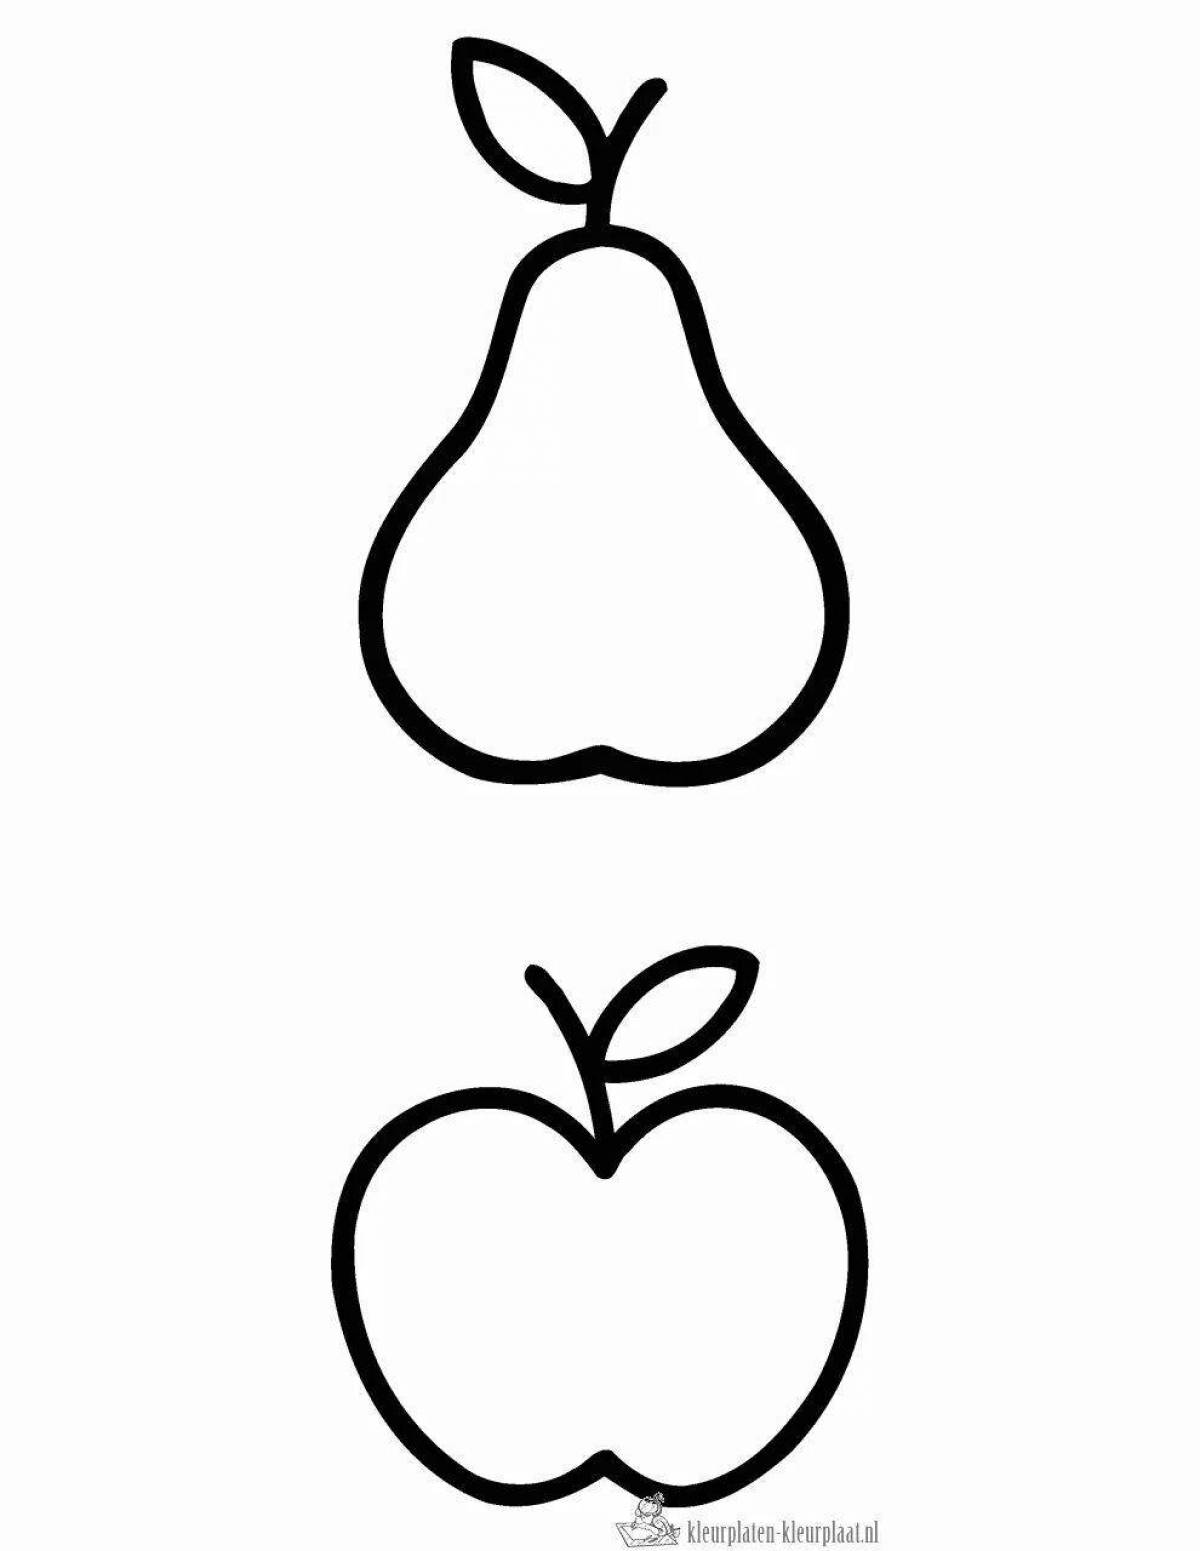 Раскраска праздничная яблочная груша